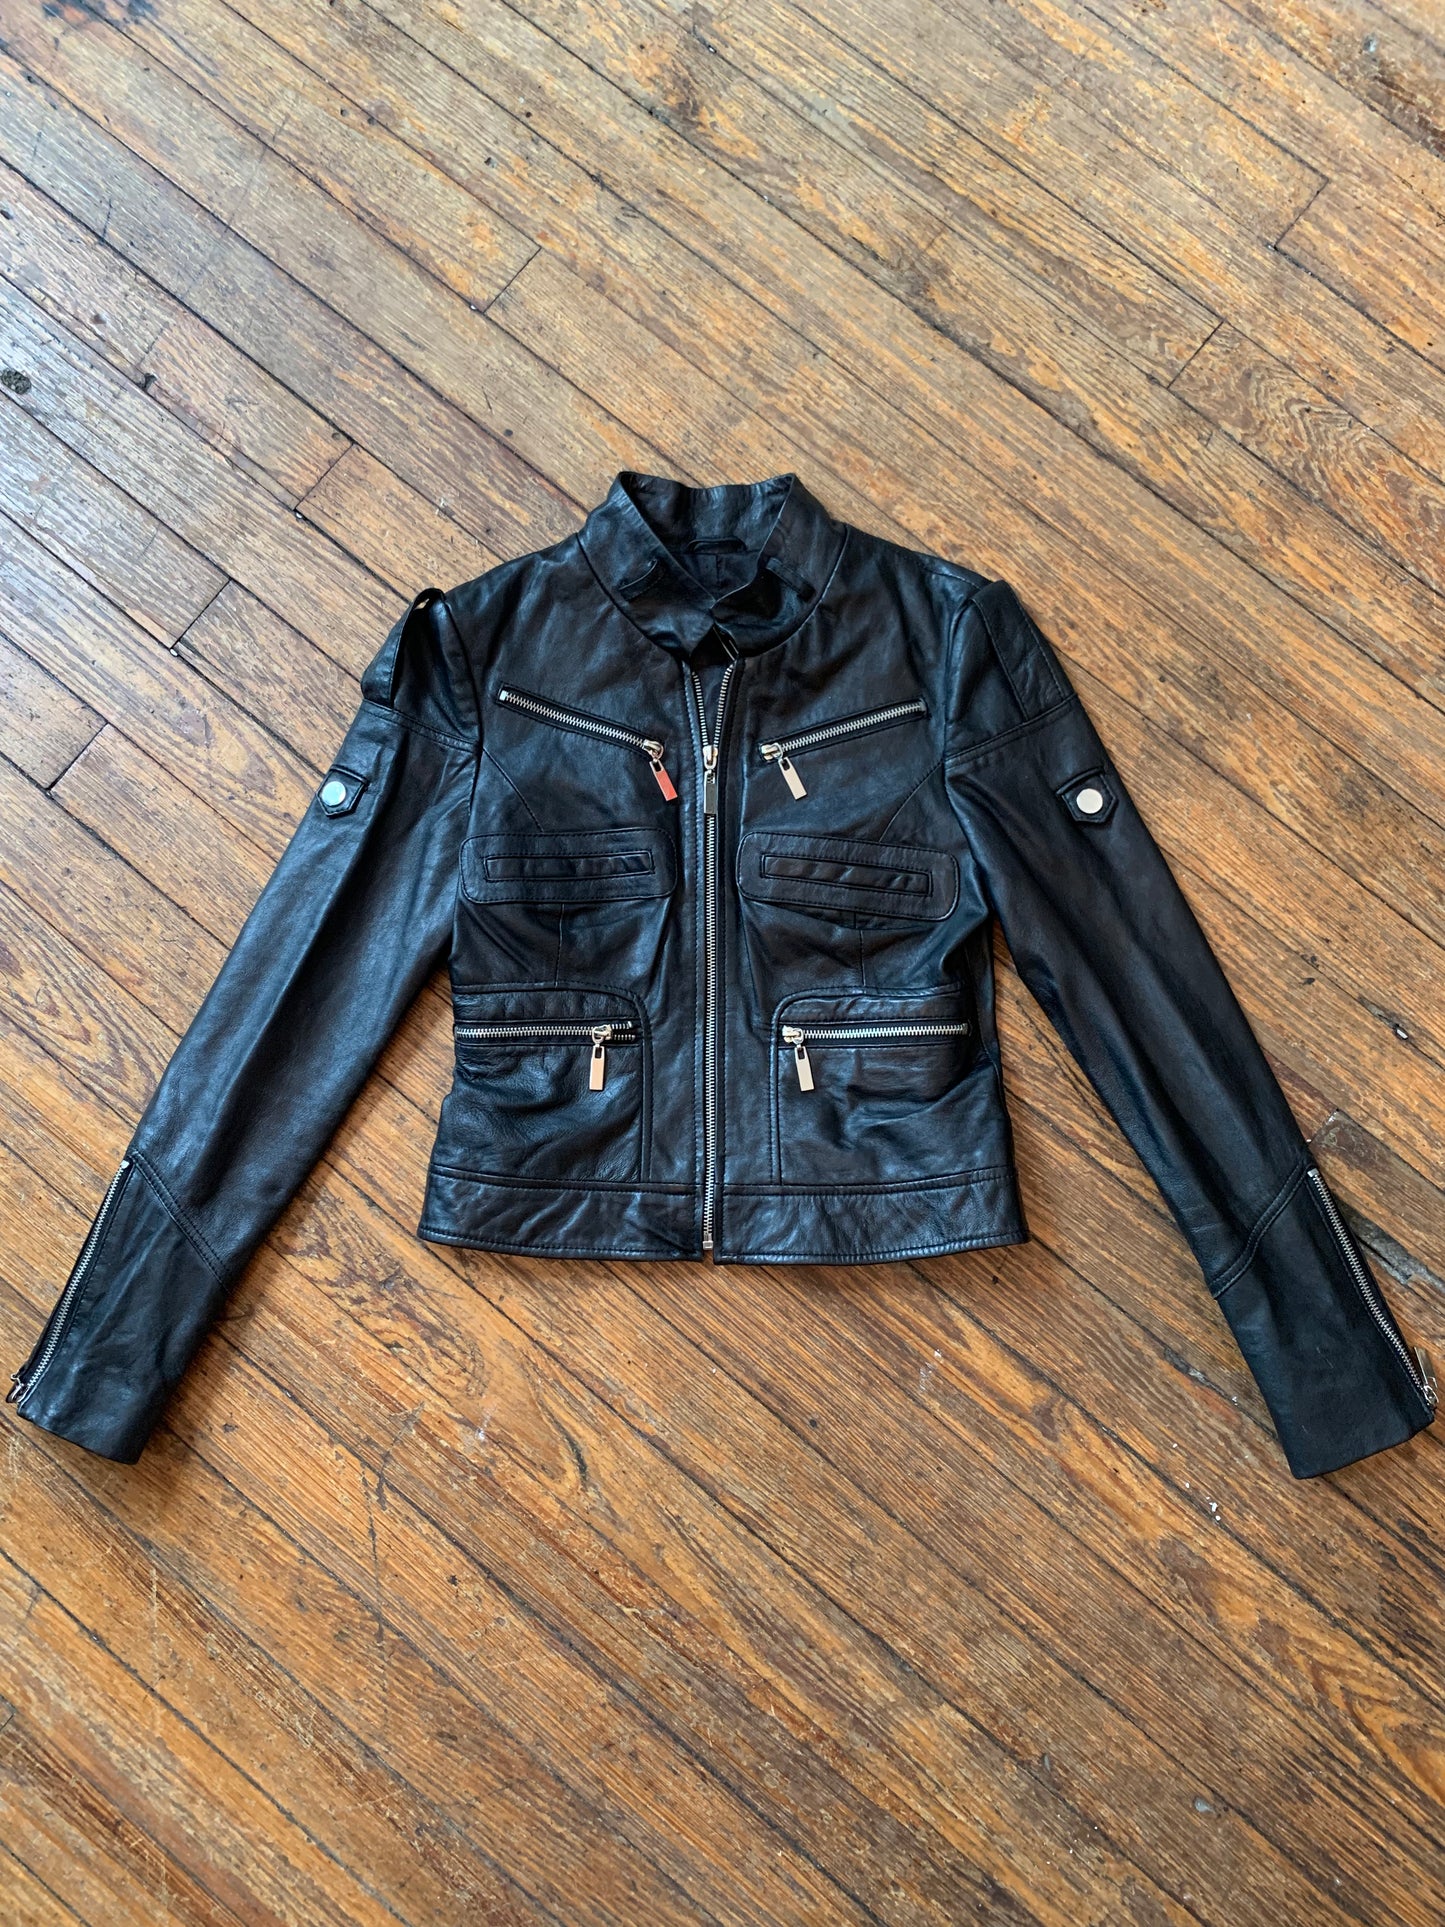 Bebe Black Leather Moto Jacket